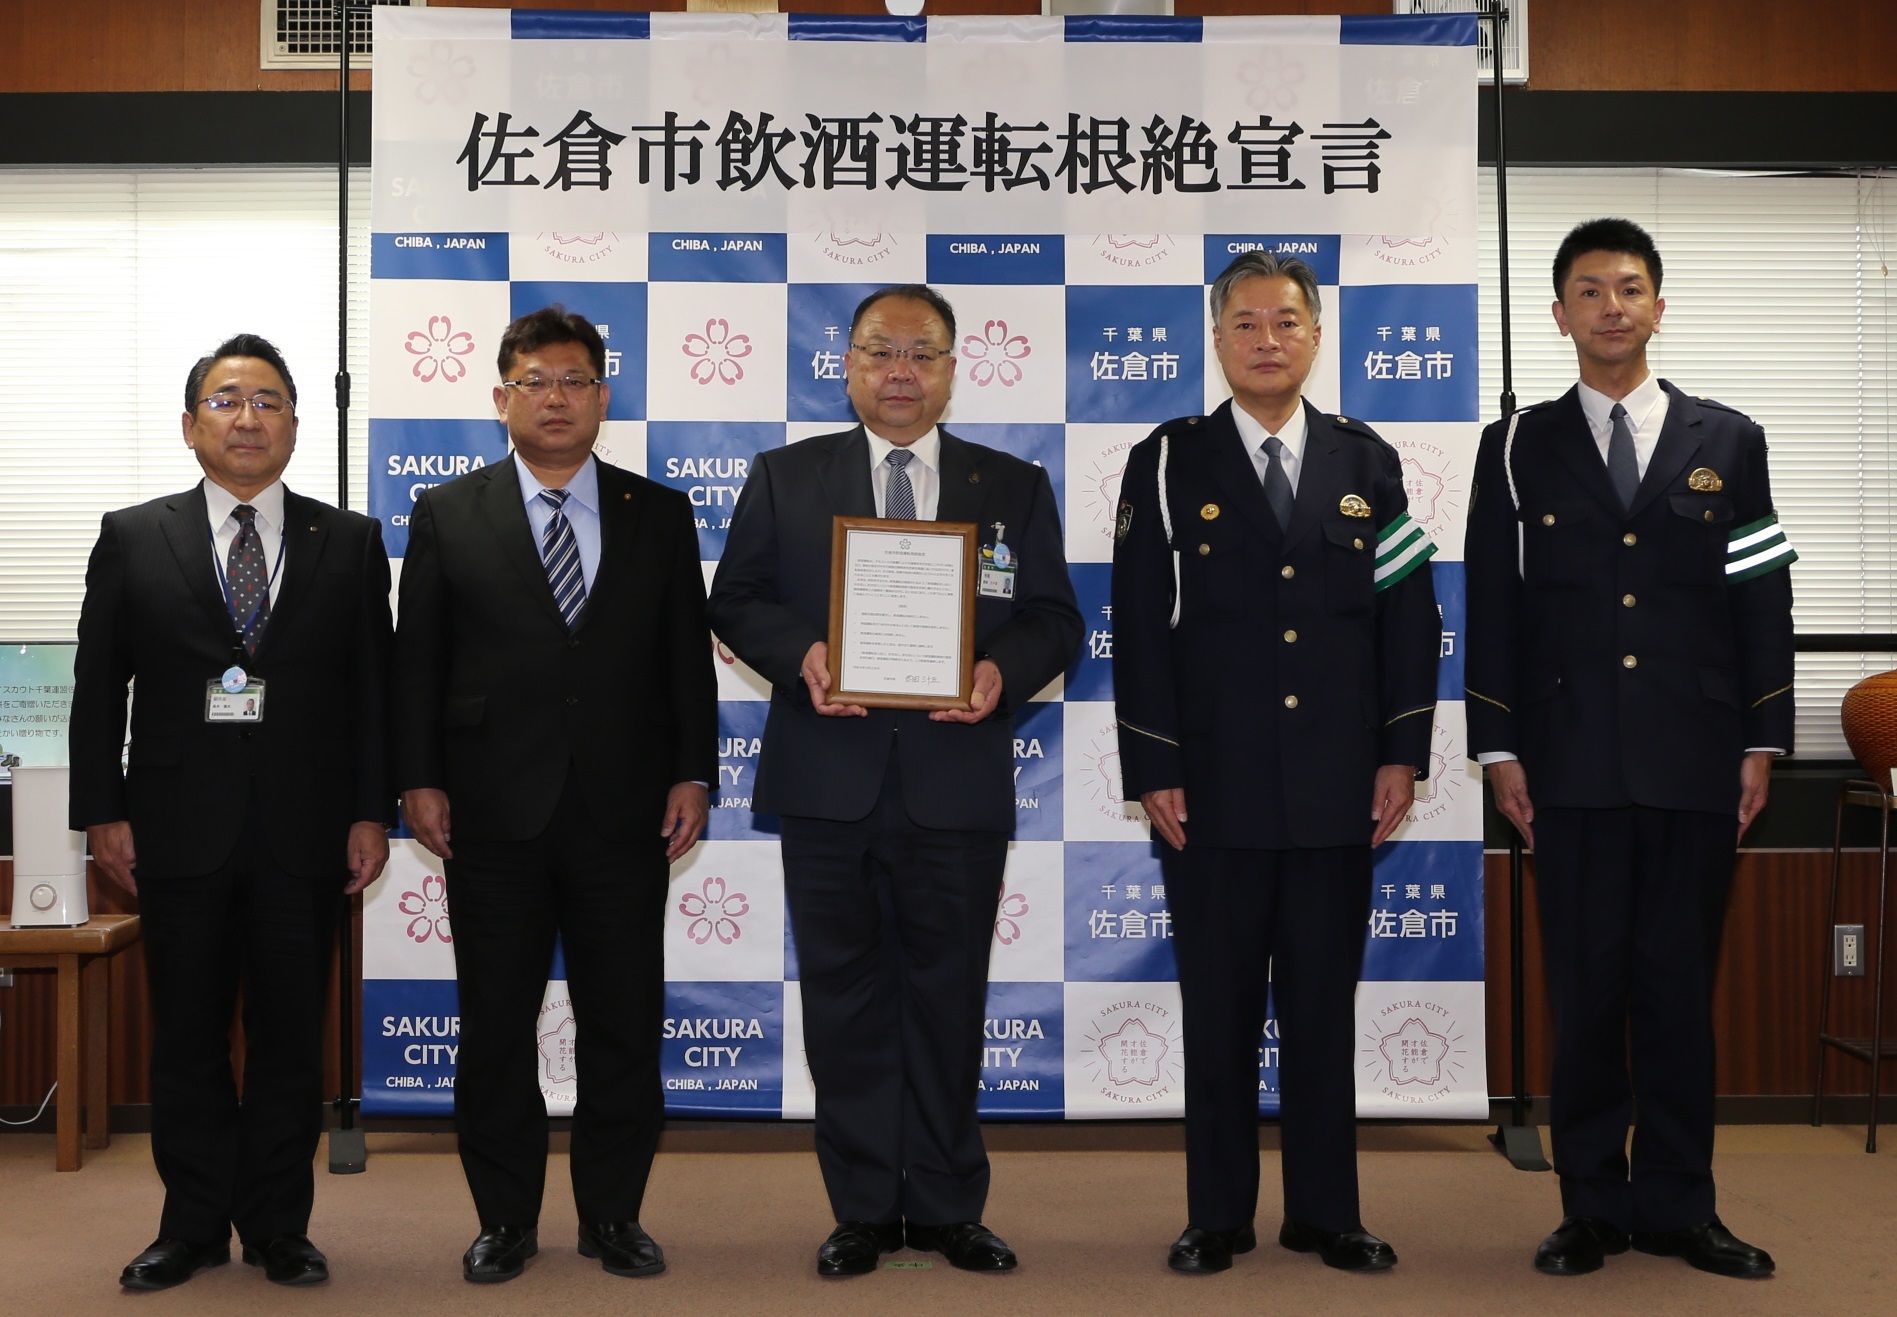 左からスーツ姿の男性が3人、制服を着た警察官2人の5人が横並びで立ち、中央の西田市長が佐倉市飲酒運転根絶宣言書を持っている写真